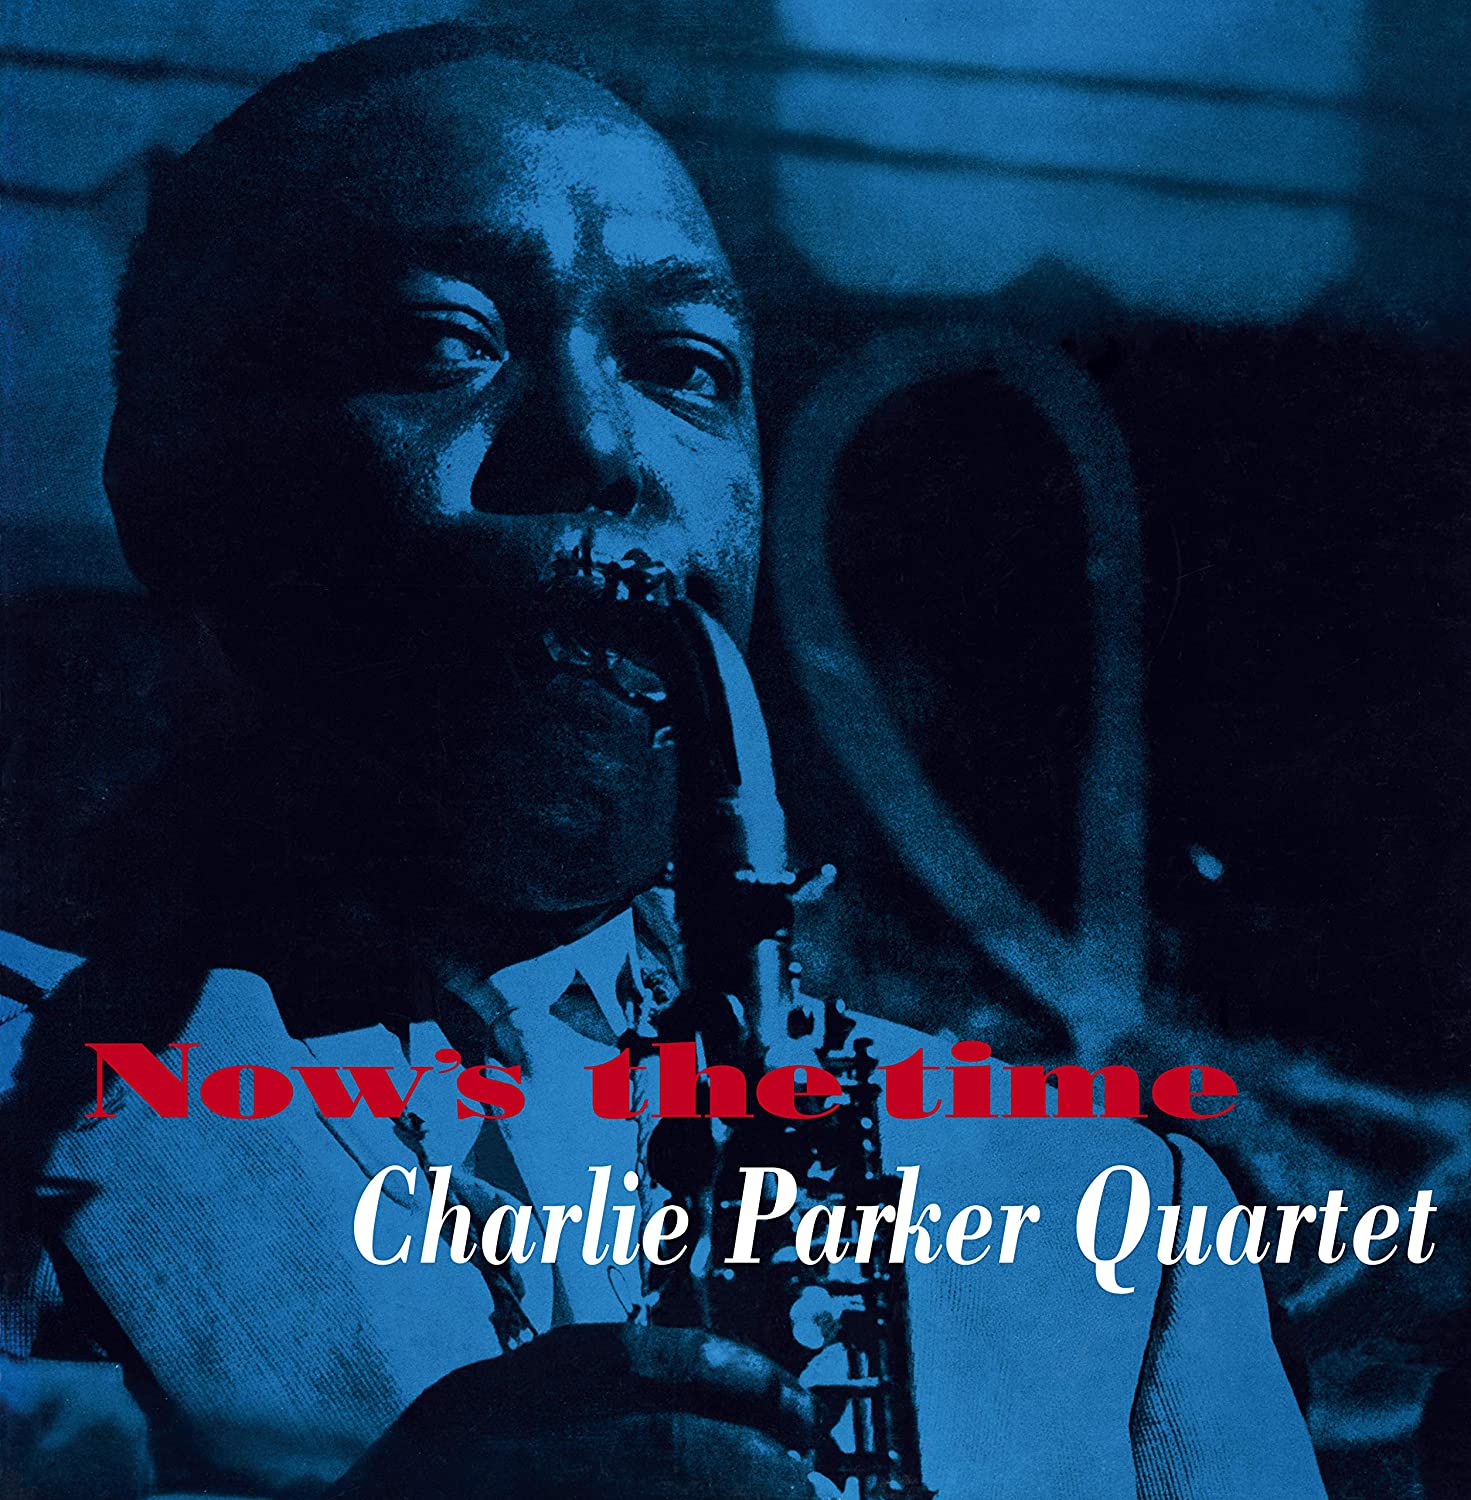 CHARLIE PARKER QUARTET - NOWS THE TIME [VINYL]